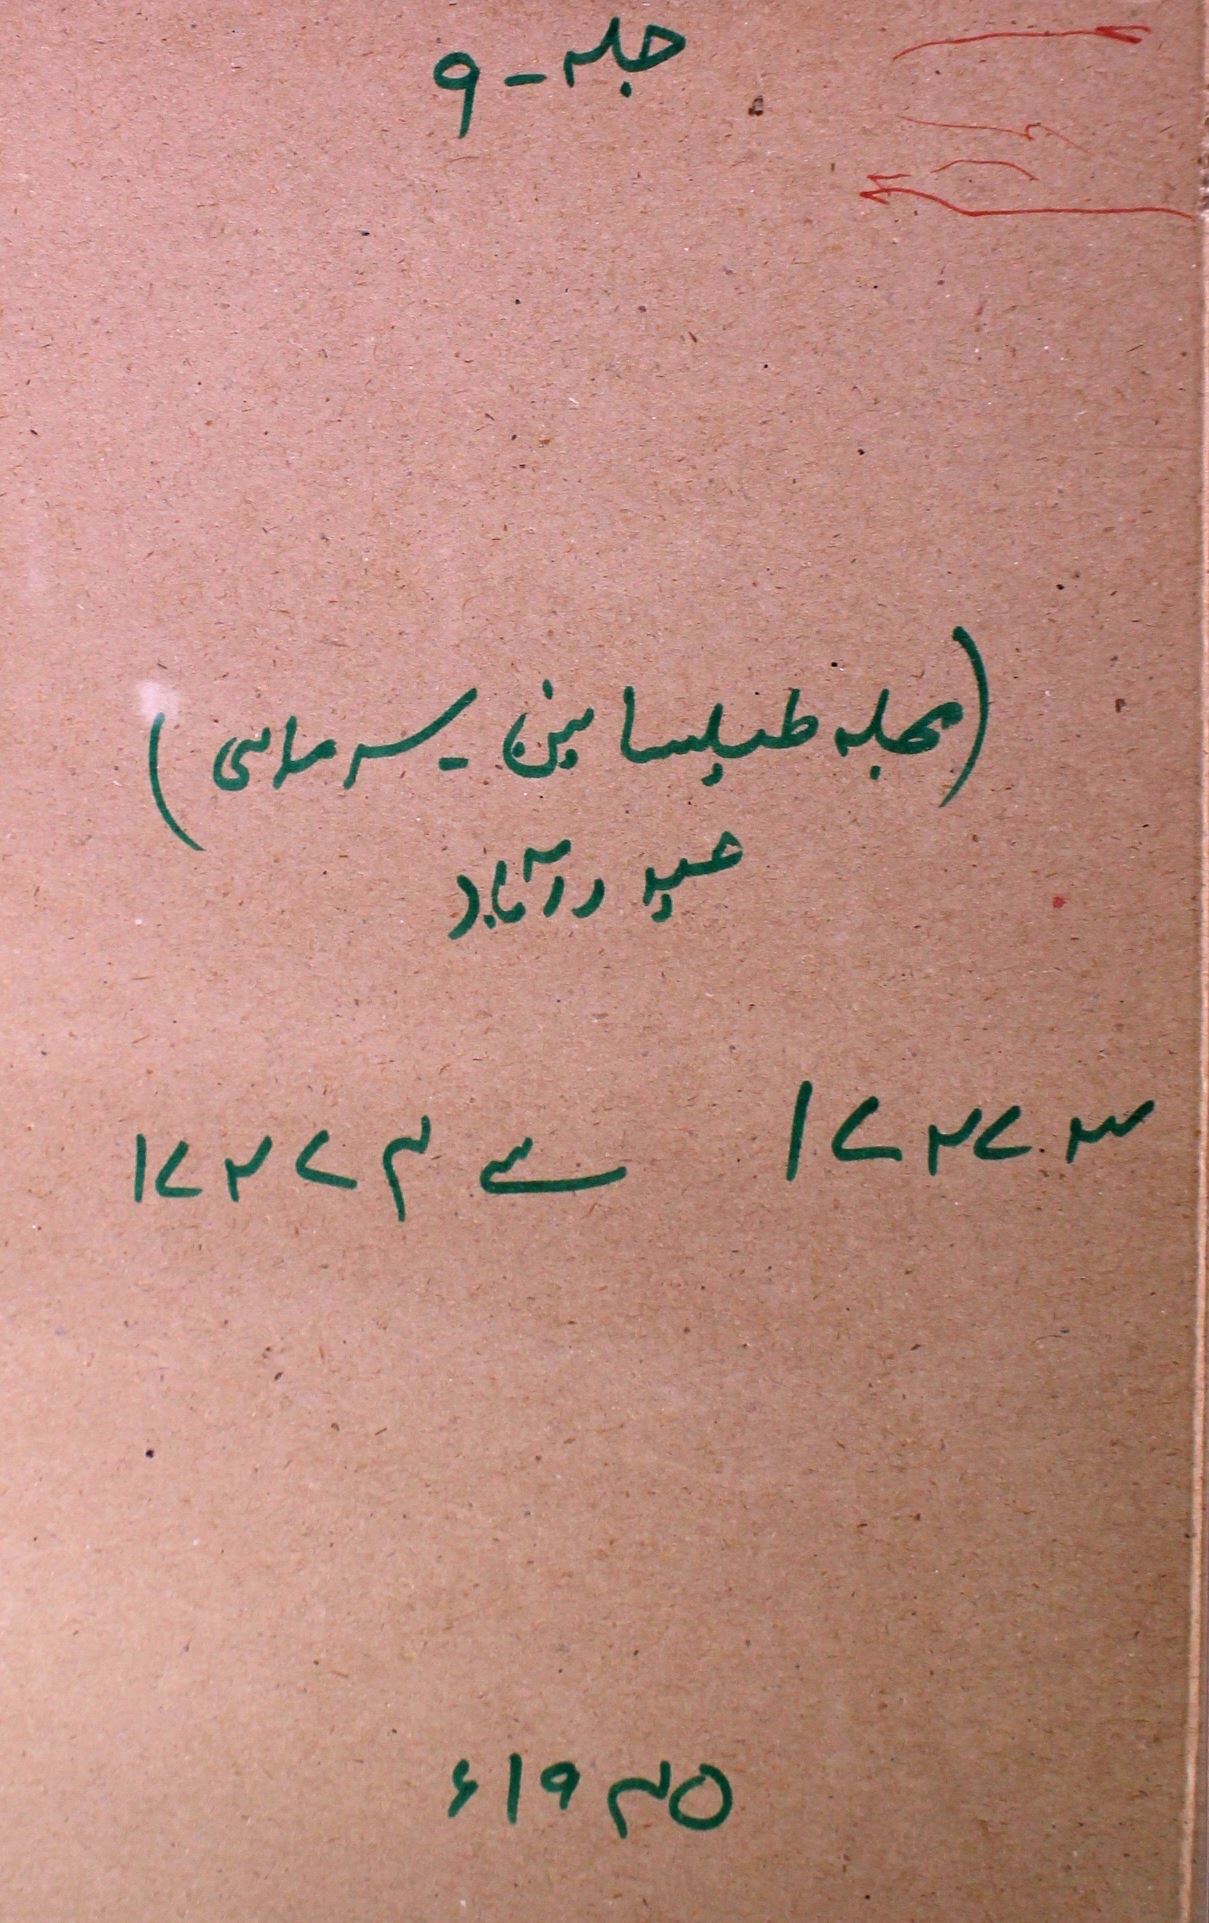 Mujalla Tayalsanain Jild 9 No 2,3 April-July 1945-SVK-Shumara Number-002,003